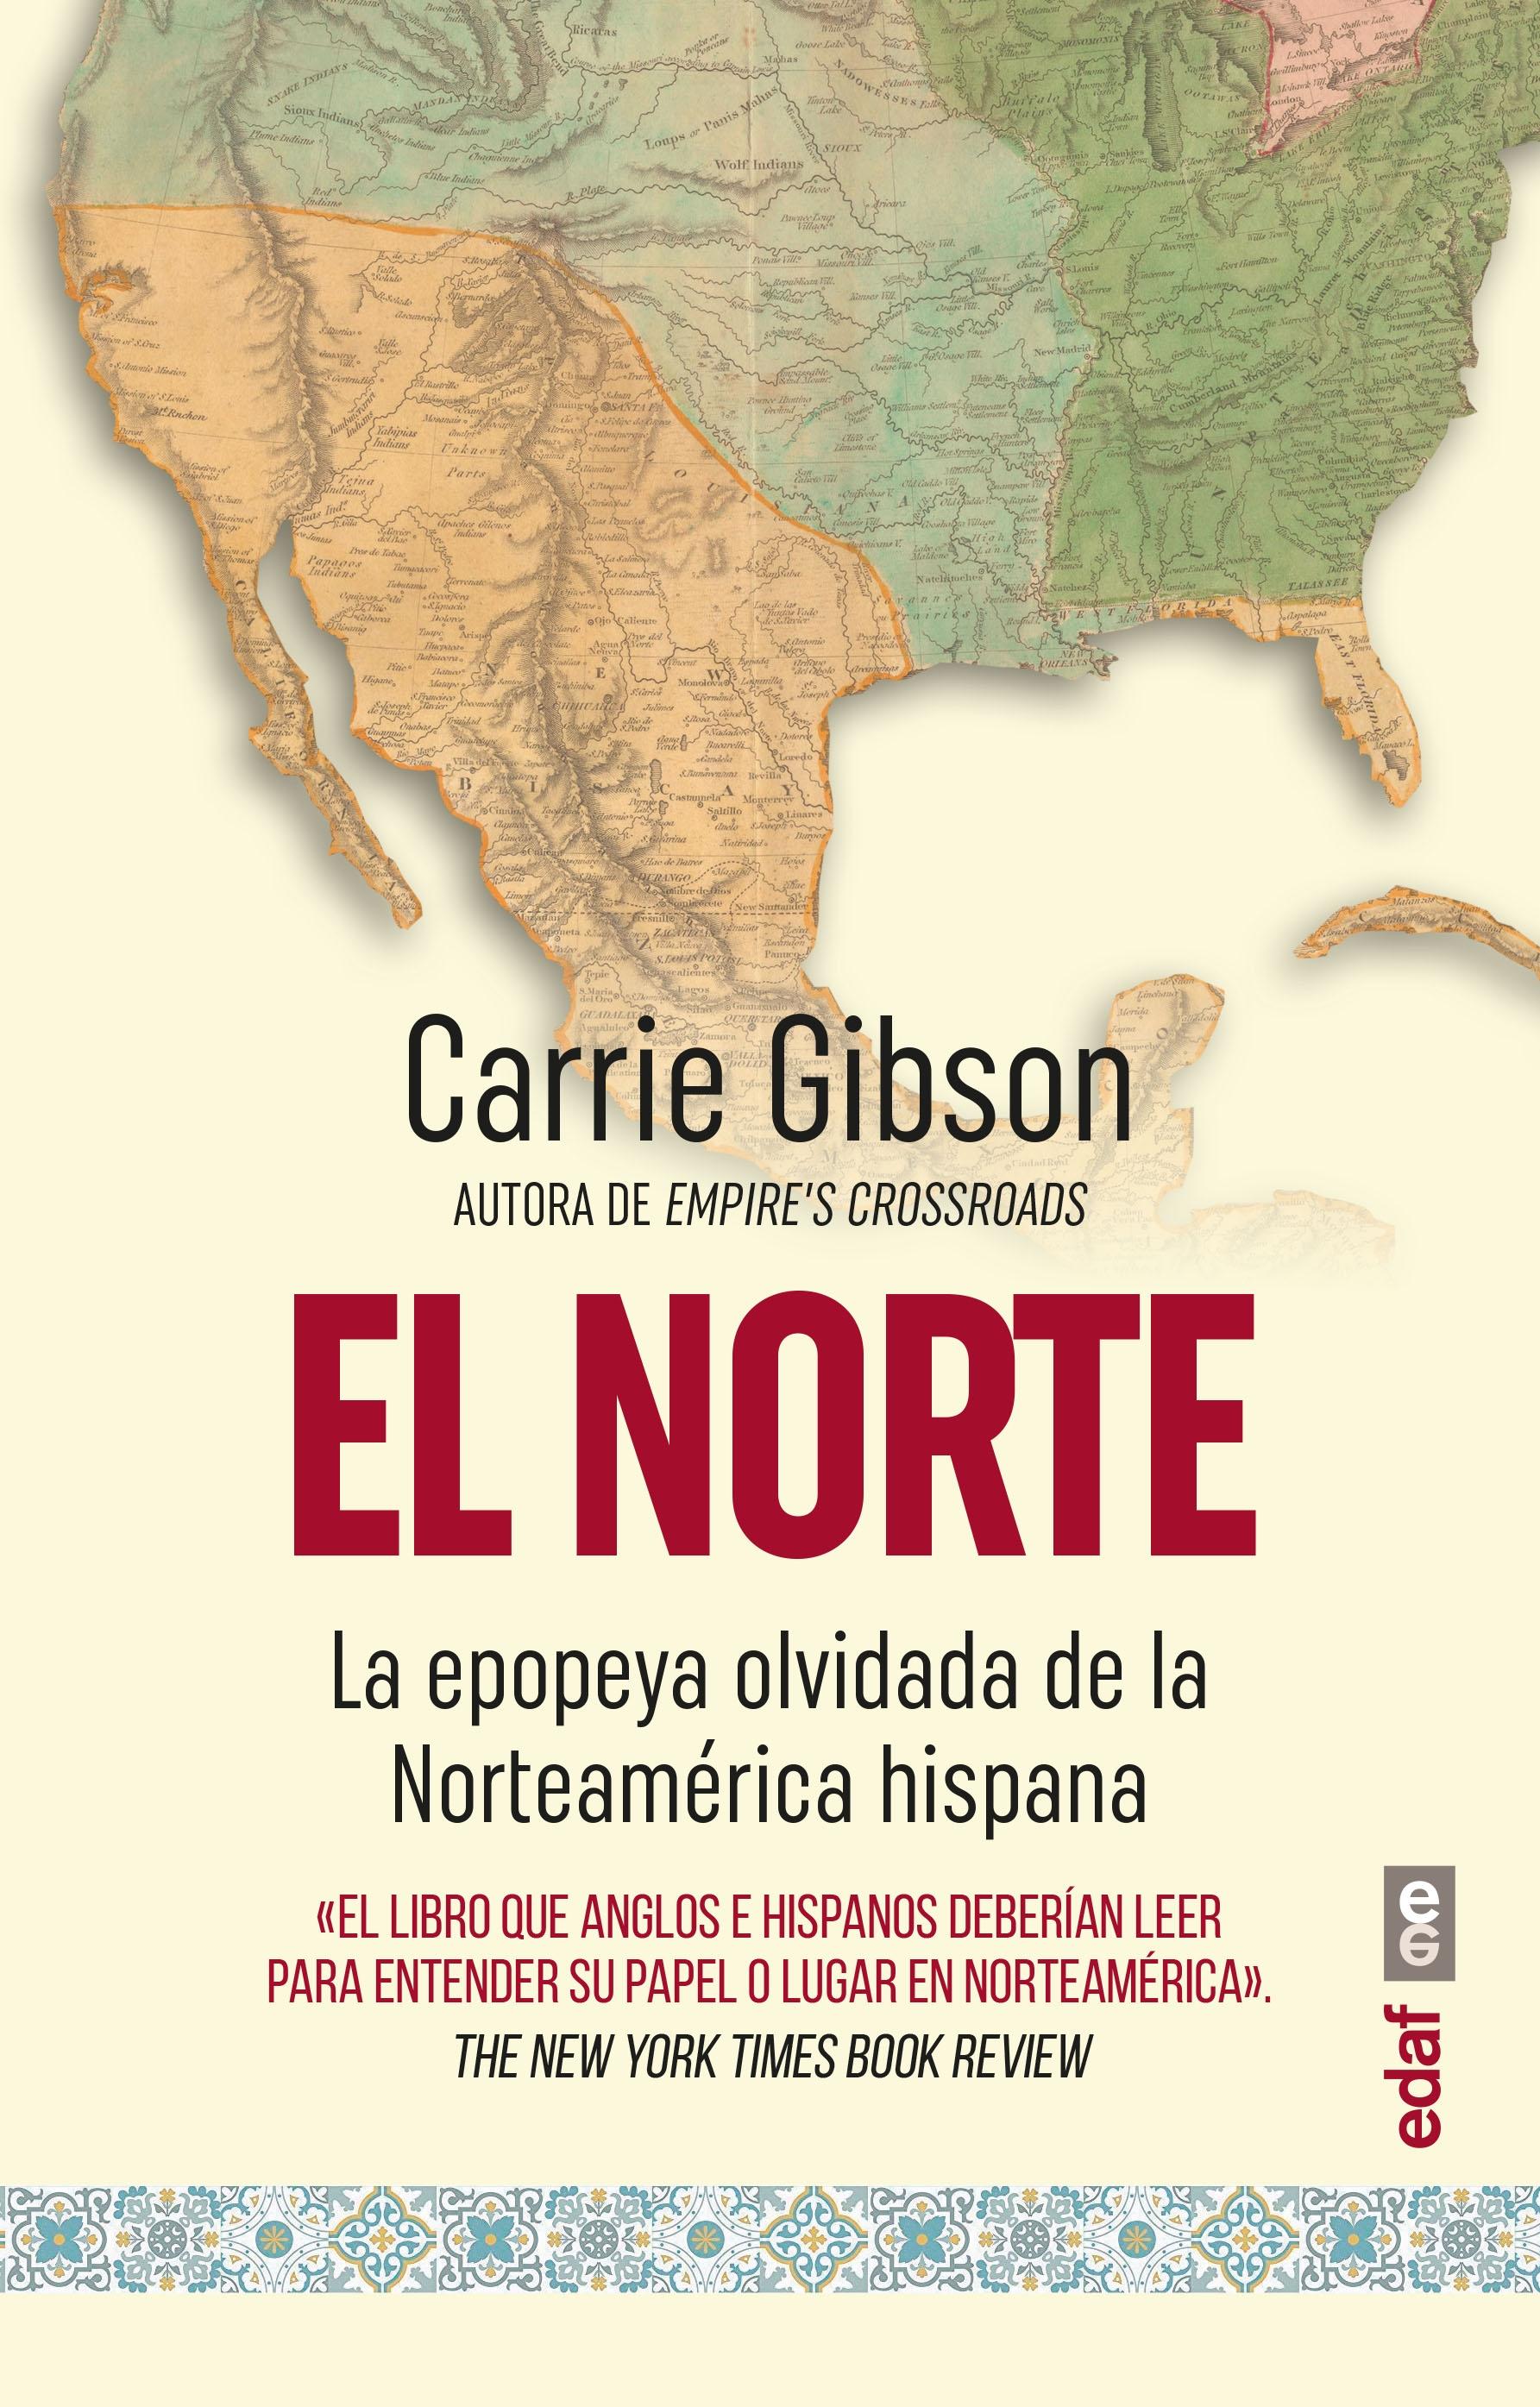 El Norte "La Epopeya Olvidada de la Norteamérica Hispana". 